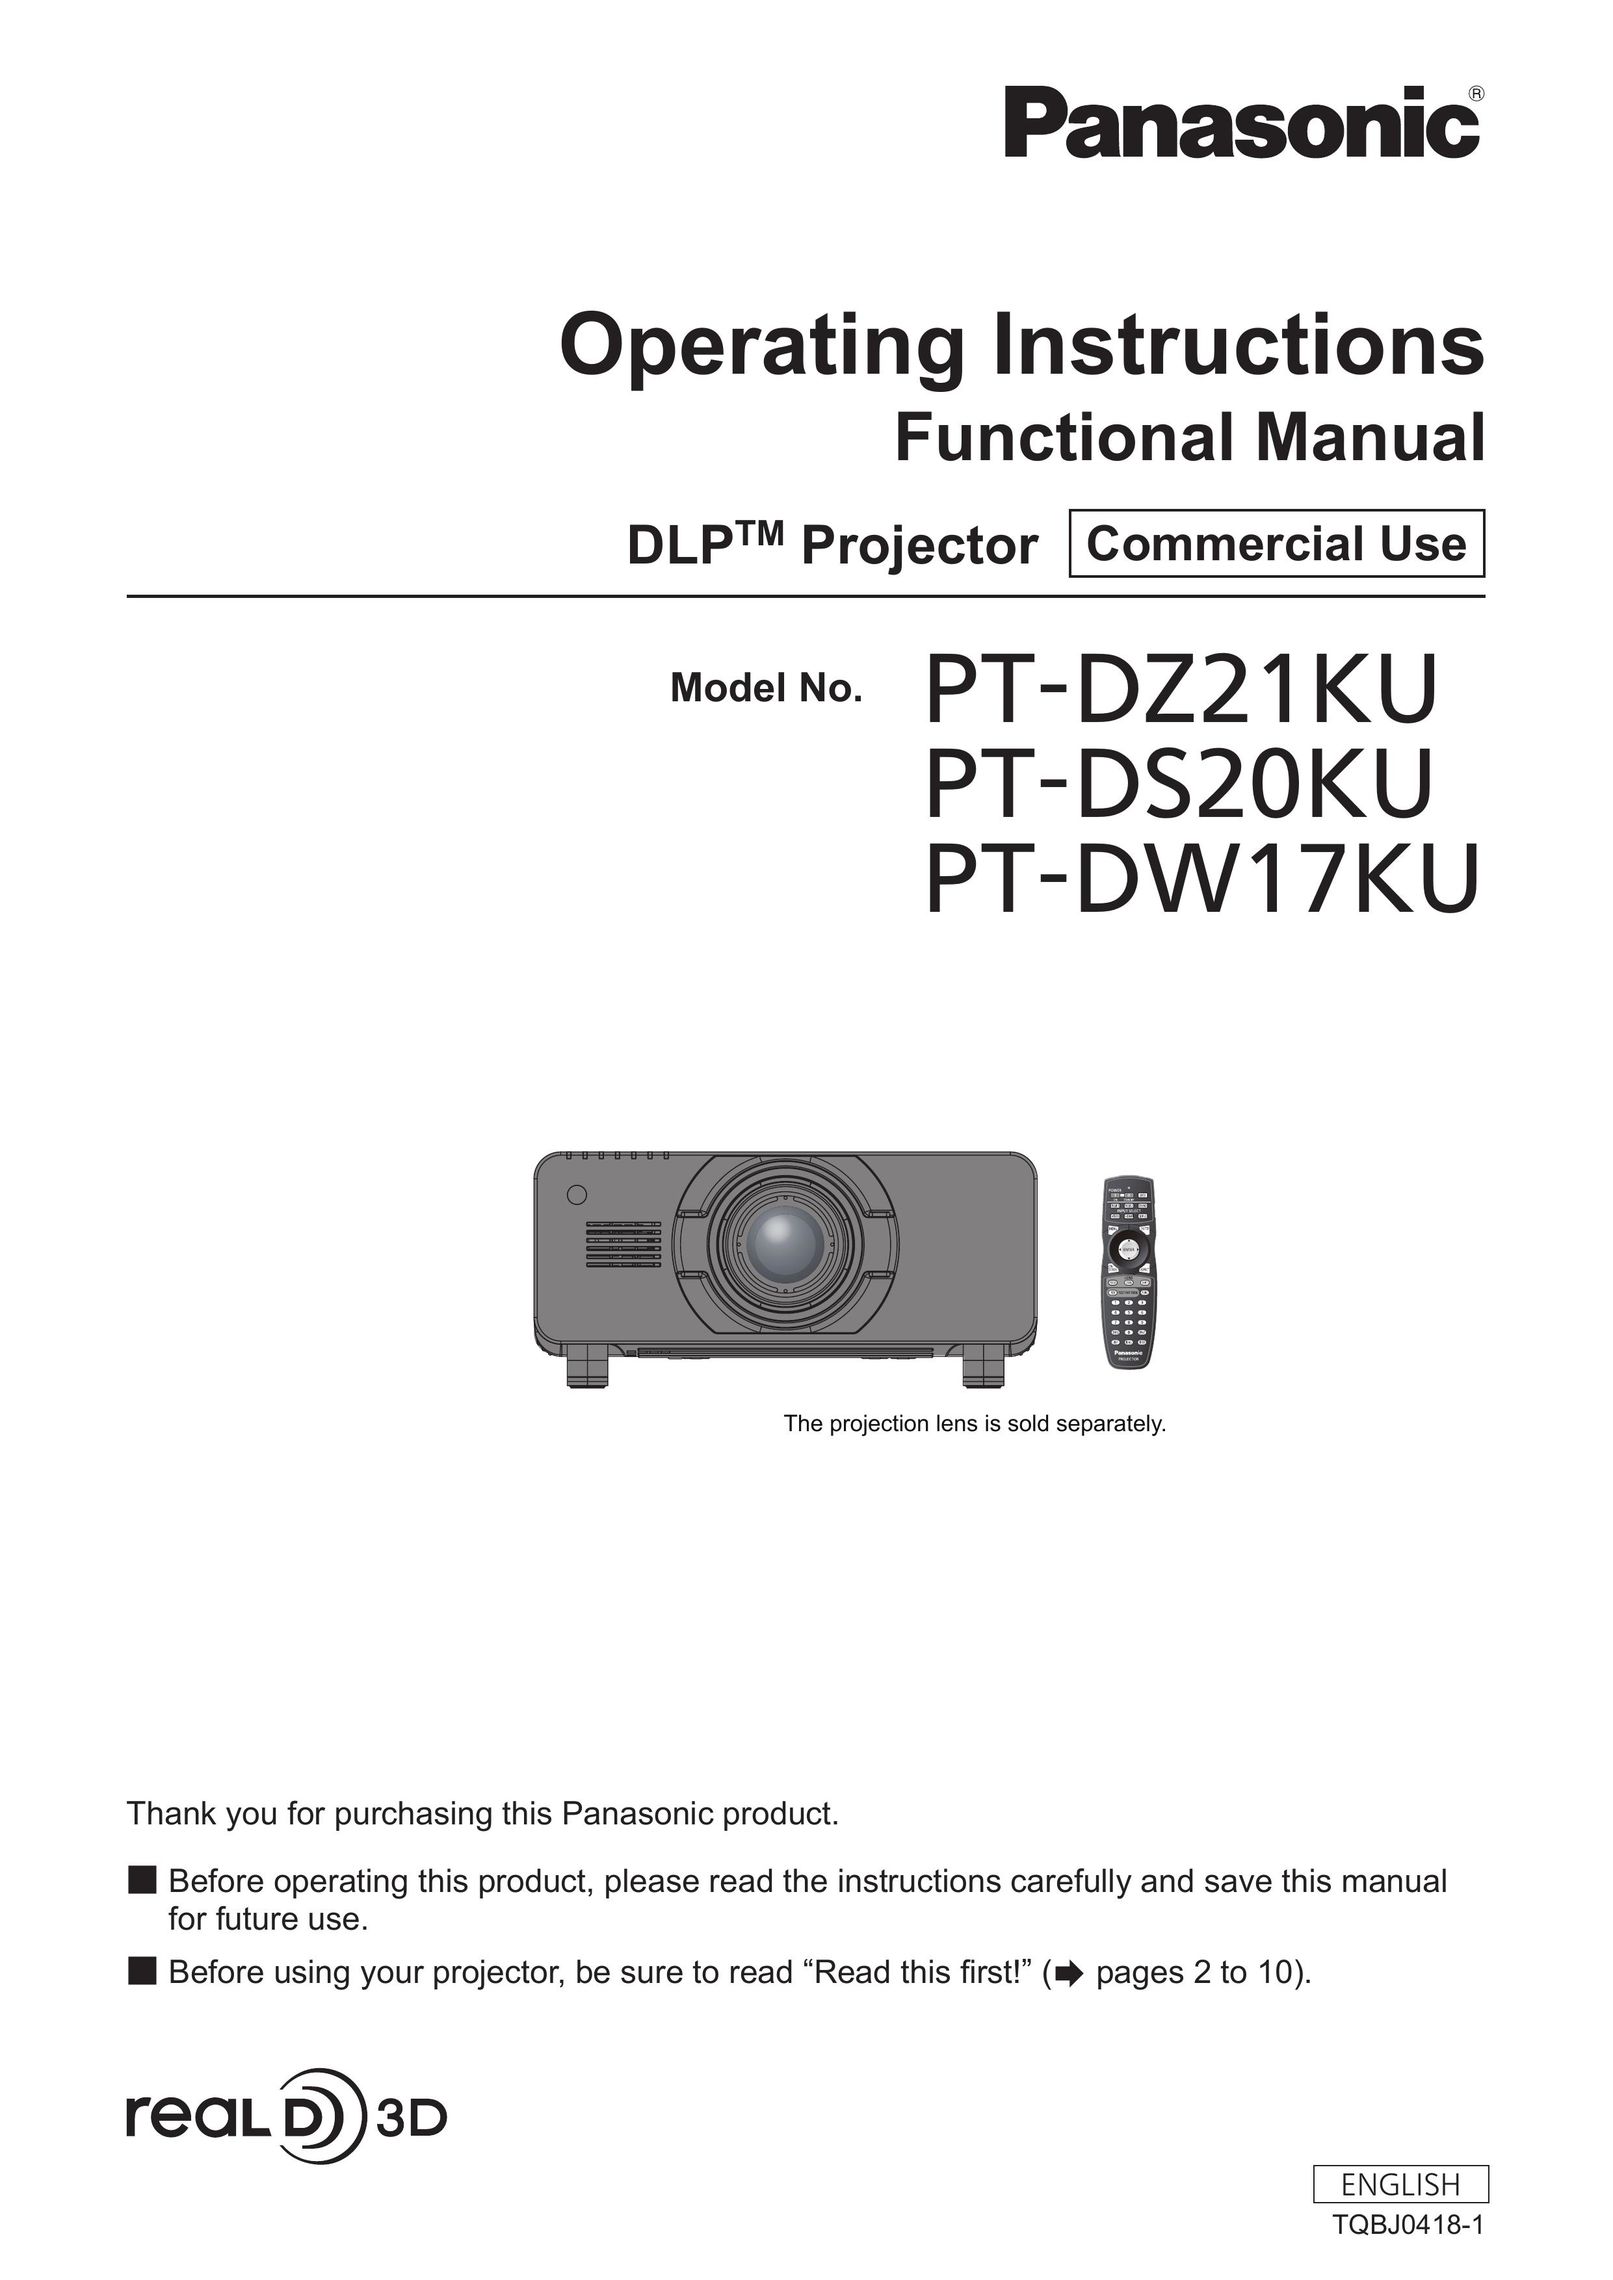 Panasonic PT-DZ21KU Home Theater System User Manual